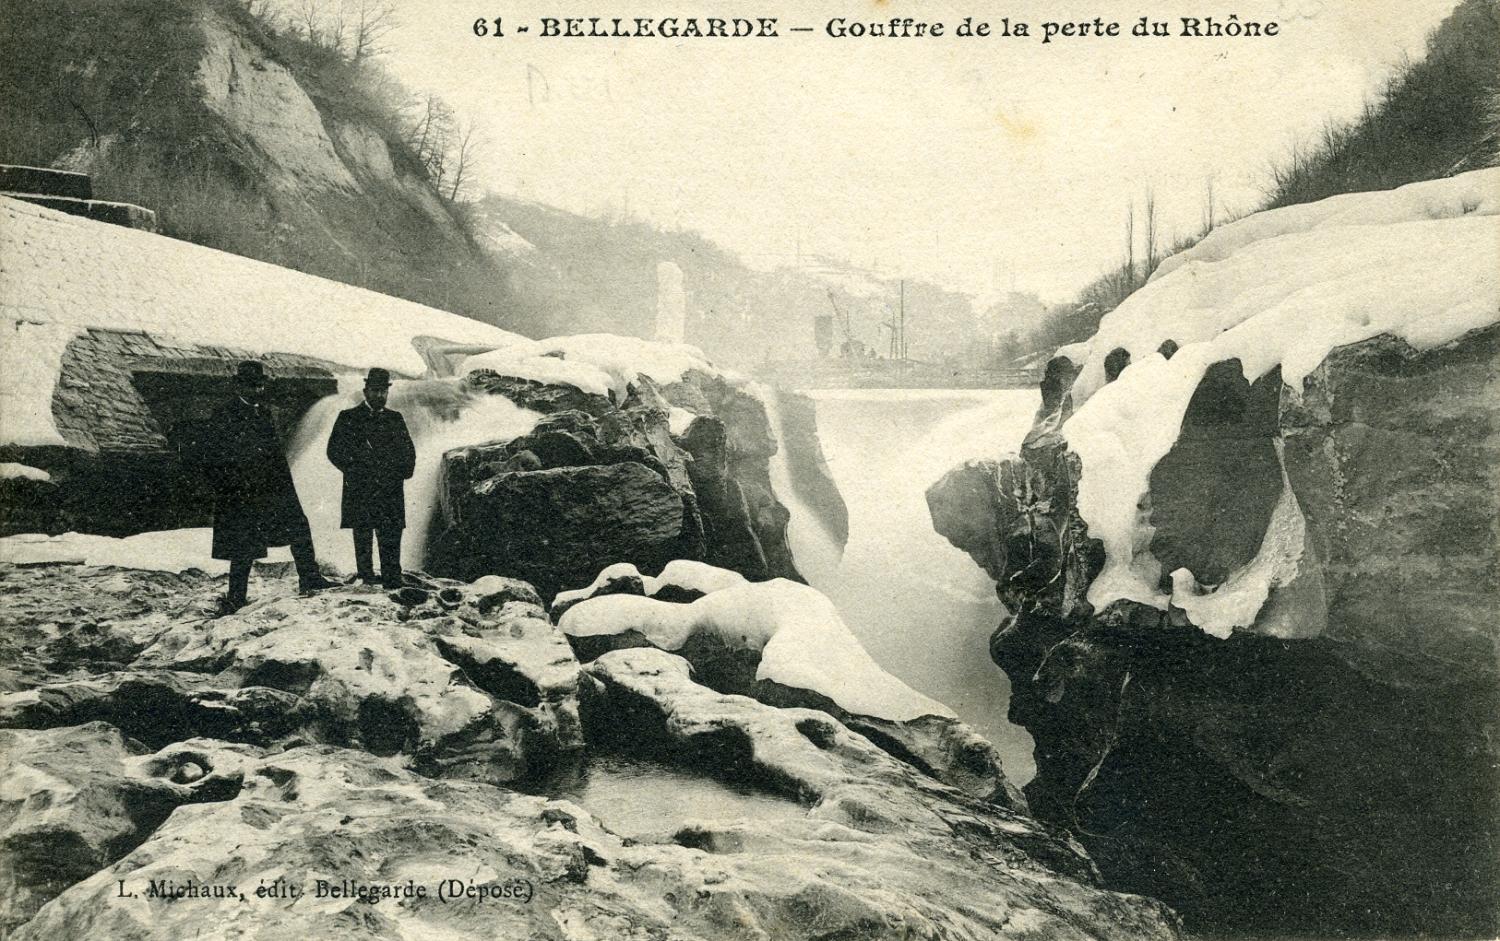 Bellegarde - Gouffre de la perte du Rhône.